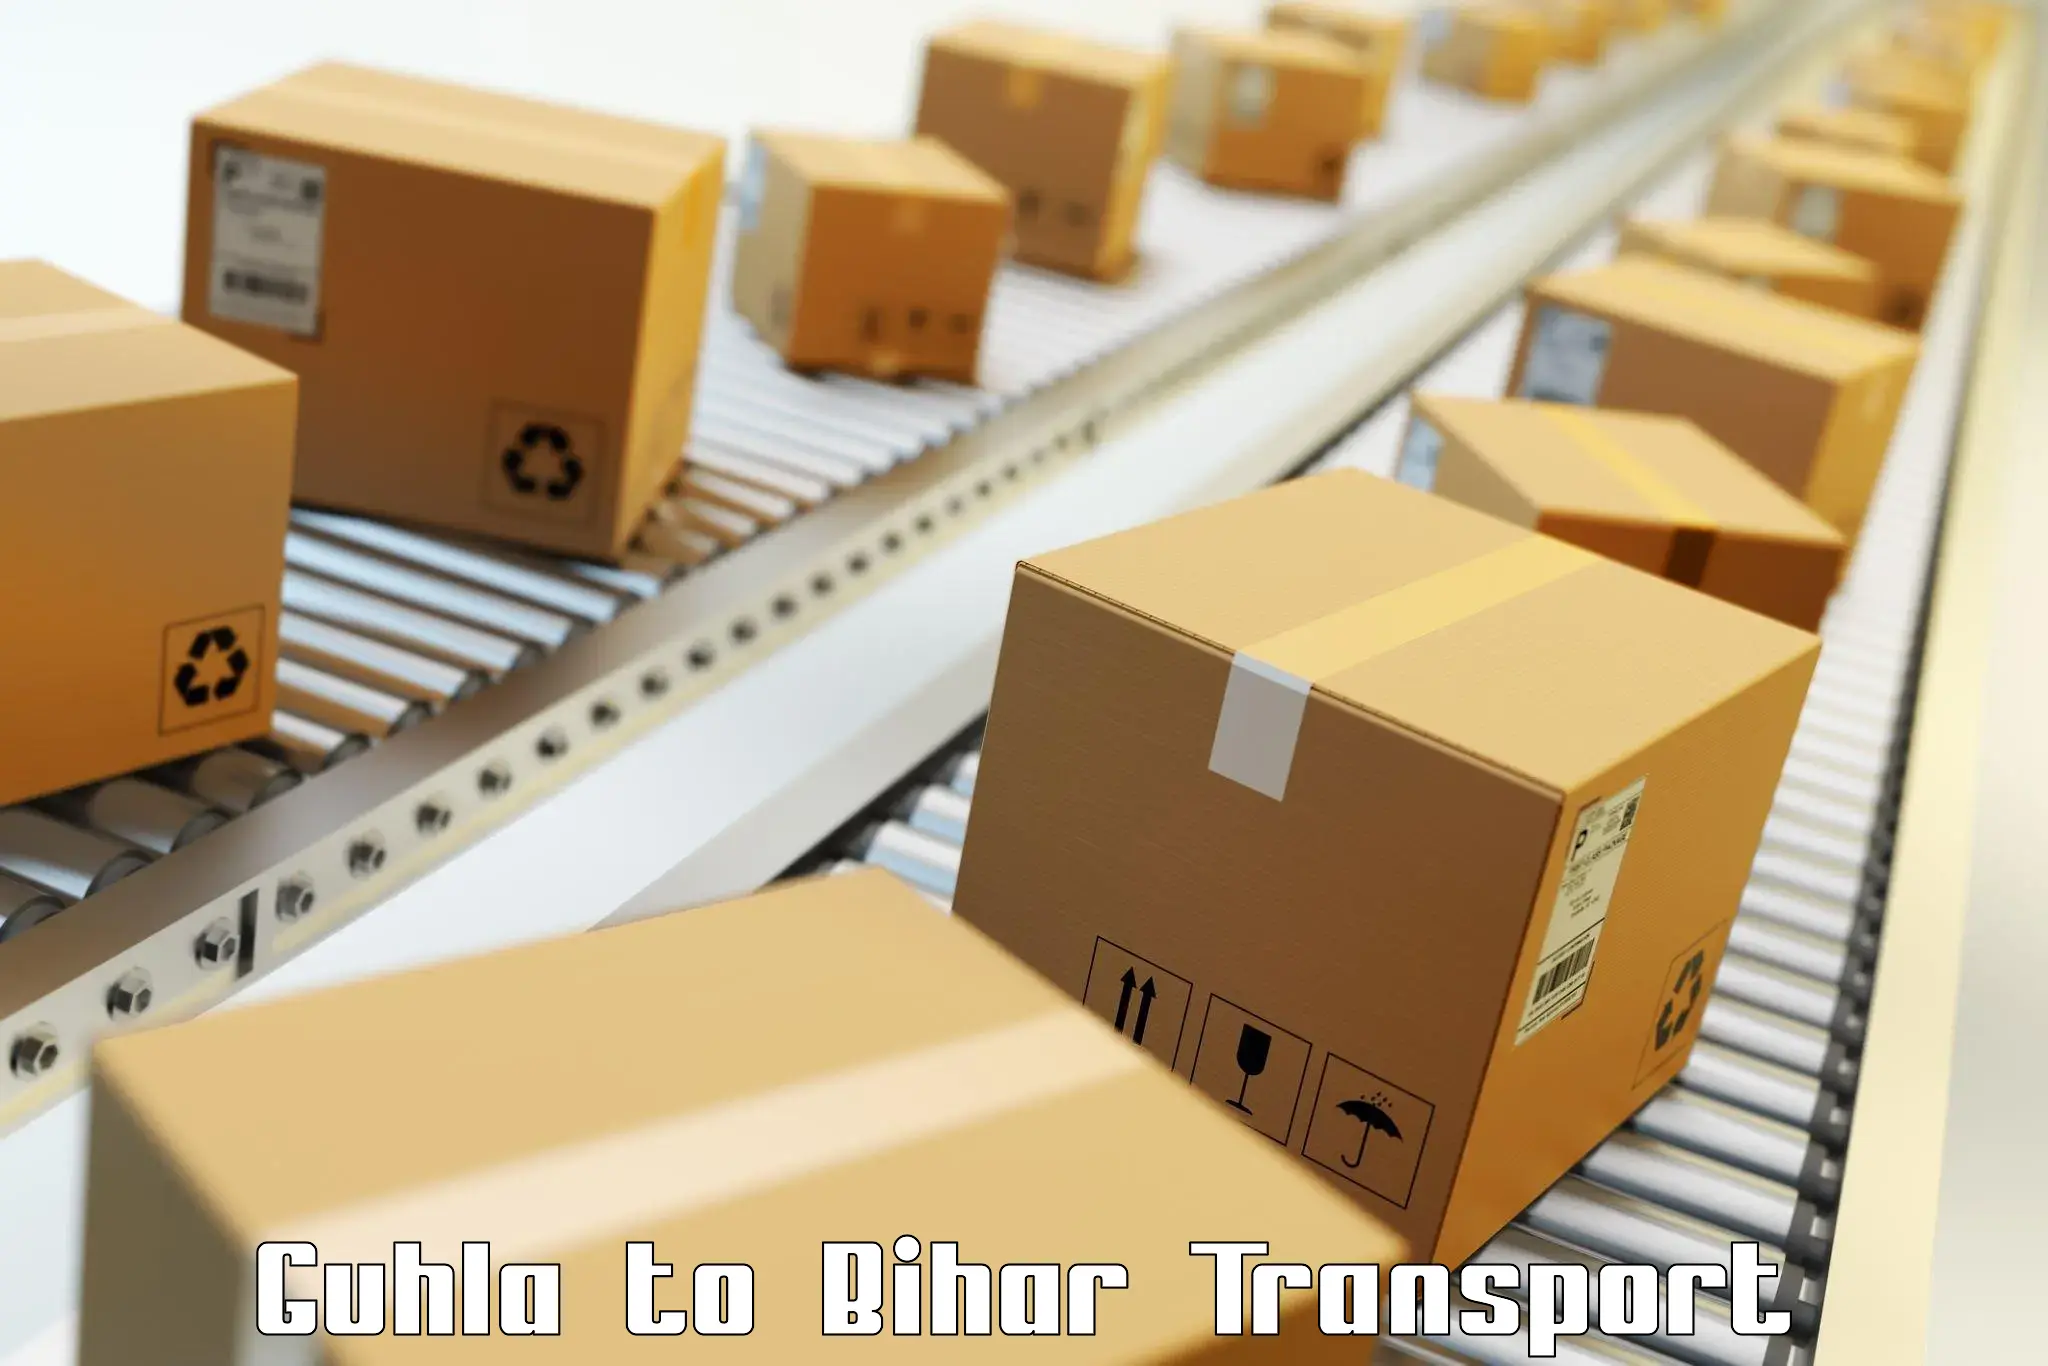 Pick up transport service Guhla to Chakai